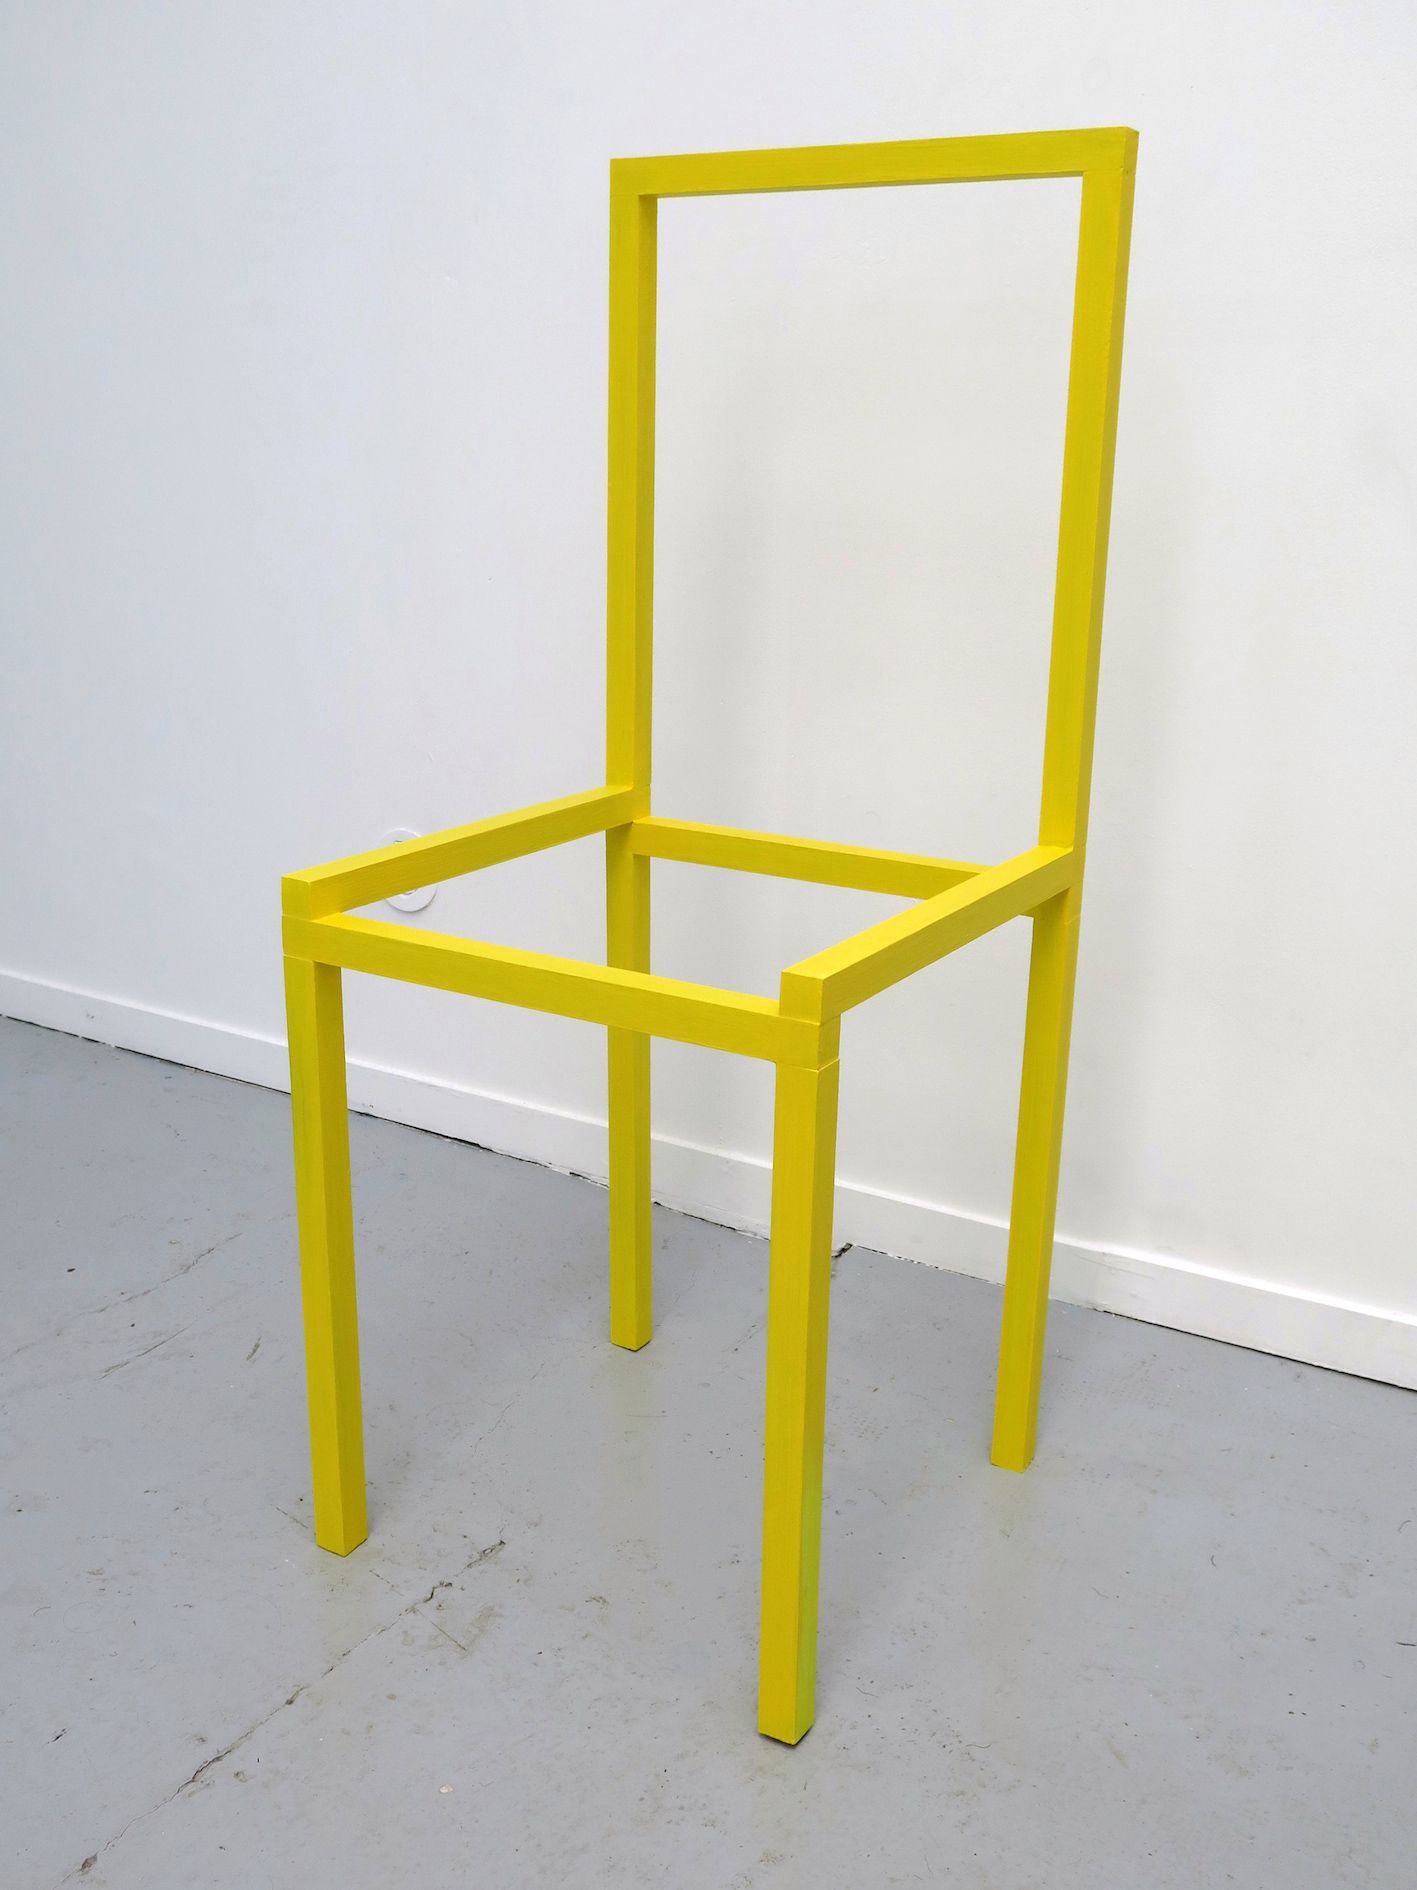 gilles-ellie-chaise-jaune-2016-bois-peinture-acrylique-98x40x40cm-15af9c1b2c41cae18f452d236e9bbfb4